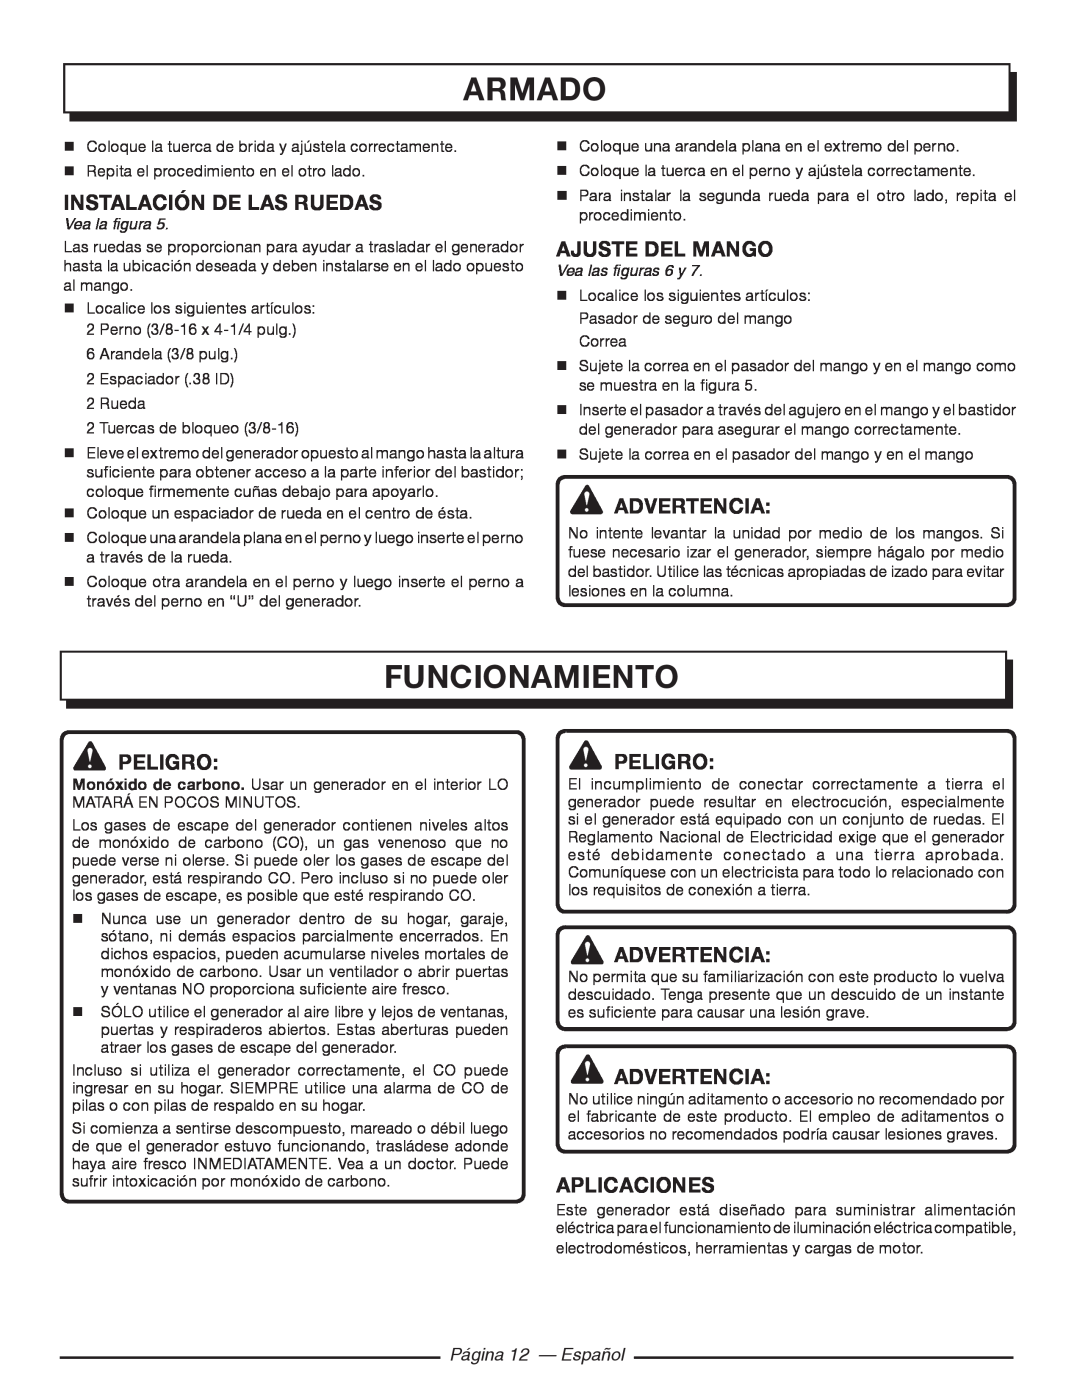 Homelite HGCA5700 armado, Funcionamiento, instalación de las ruedas, Ajuste del mango, Aplicaciones, Página 12 — Español 